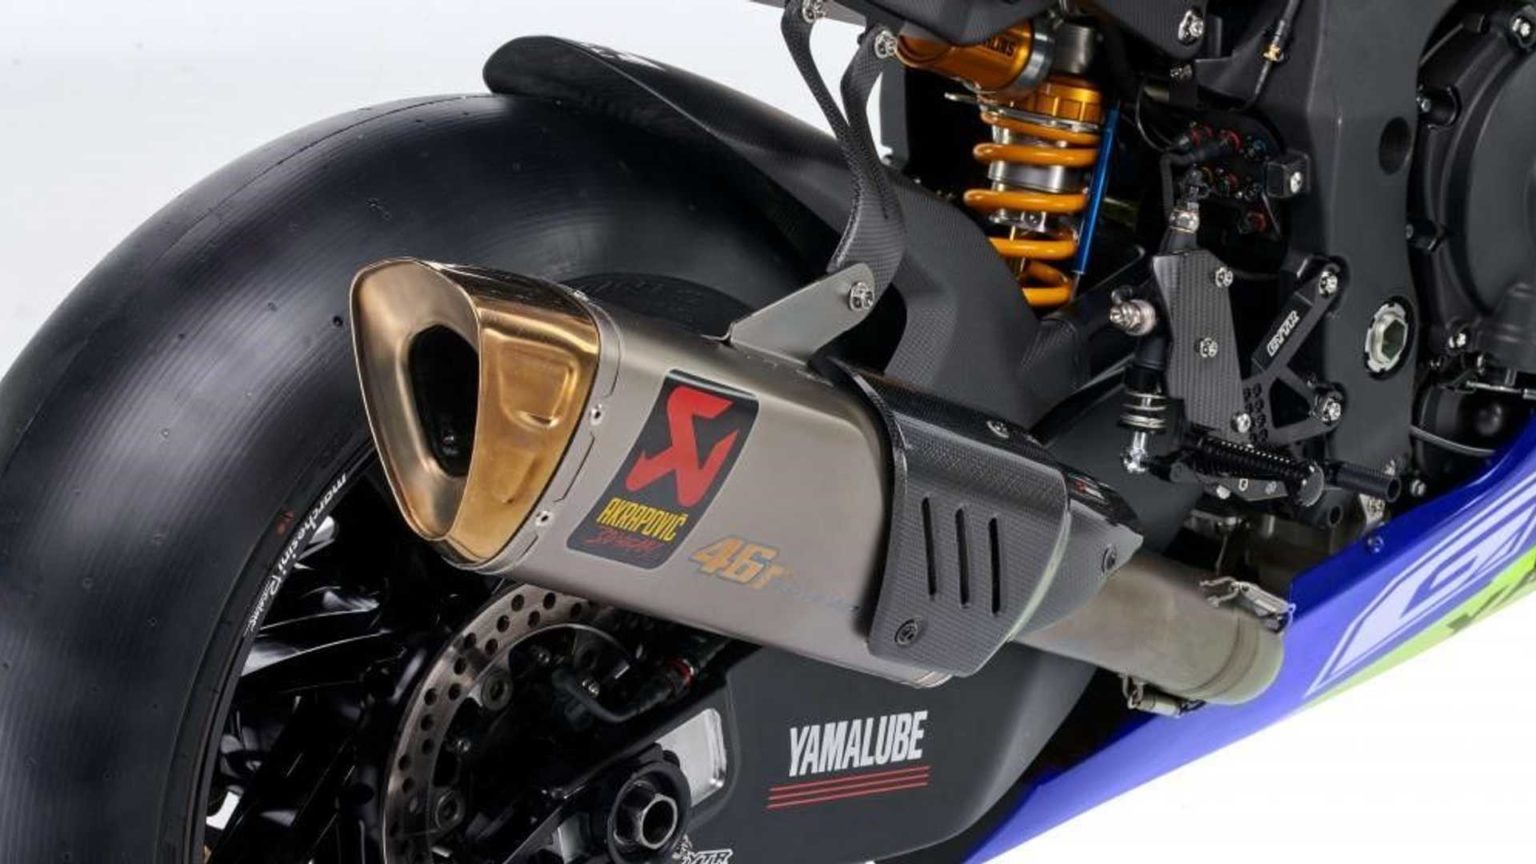 Yamaha YZR-R1 phiên bản đặc biệt vinh danh tay đua Valentino Rossi 2022-Yamaha-YZF-R1-GYTR-VR46-Tribute (2).jpg